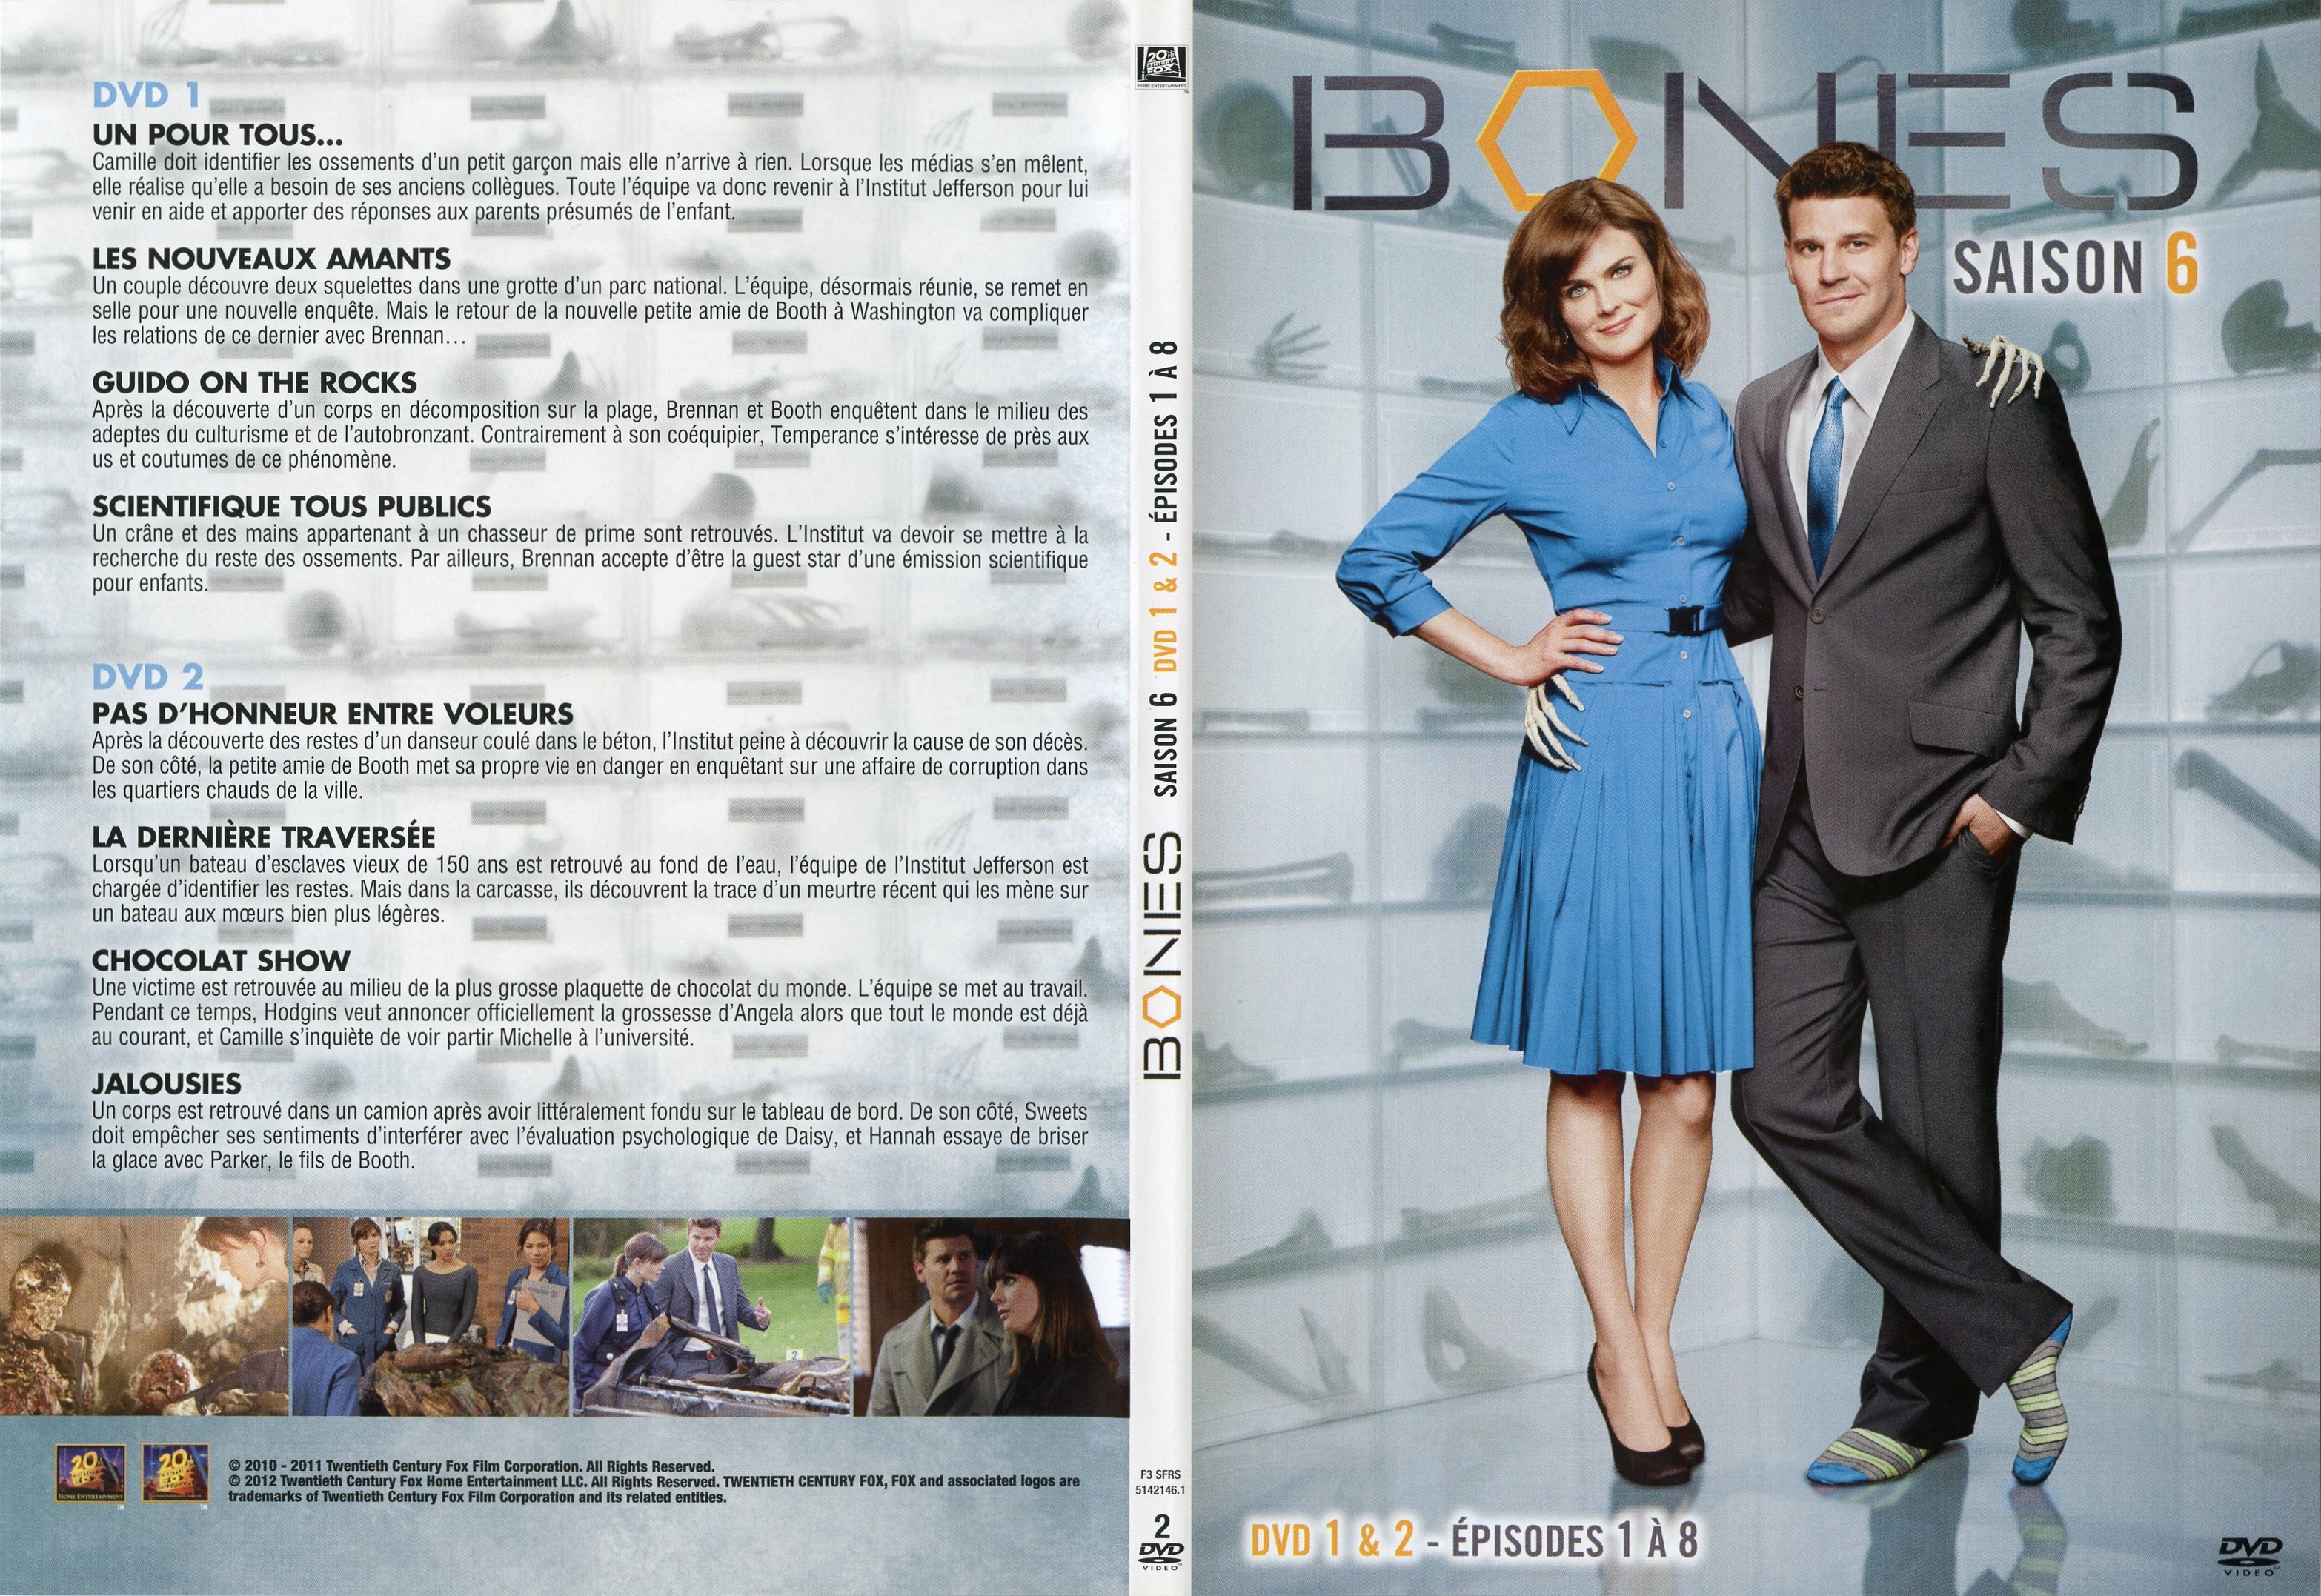 Jaquette DVD Bones Saison 6 DVD 1